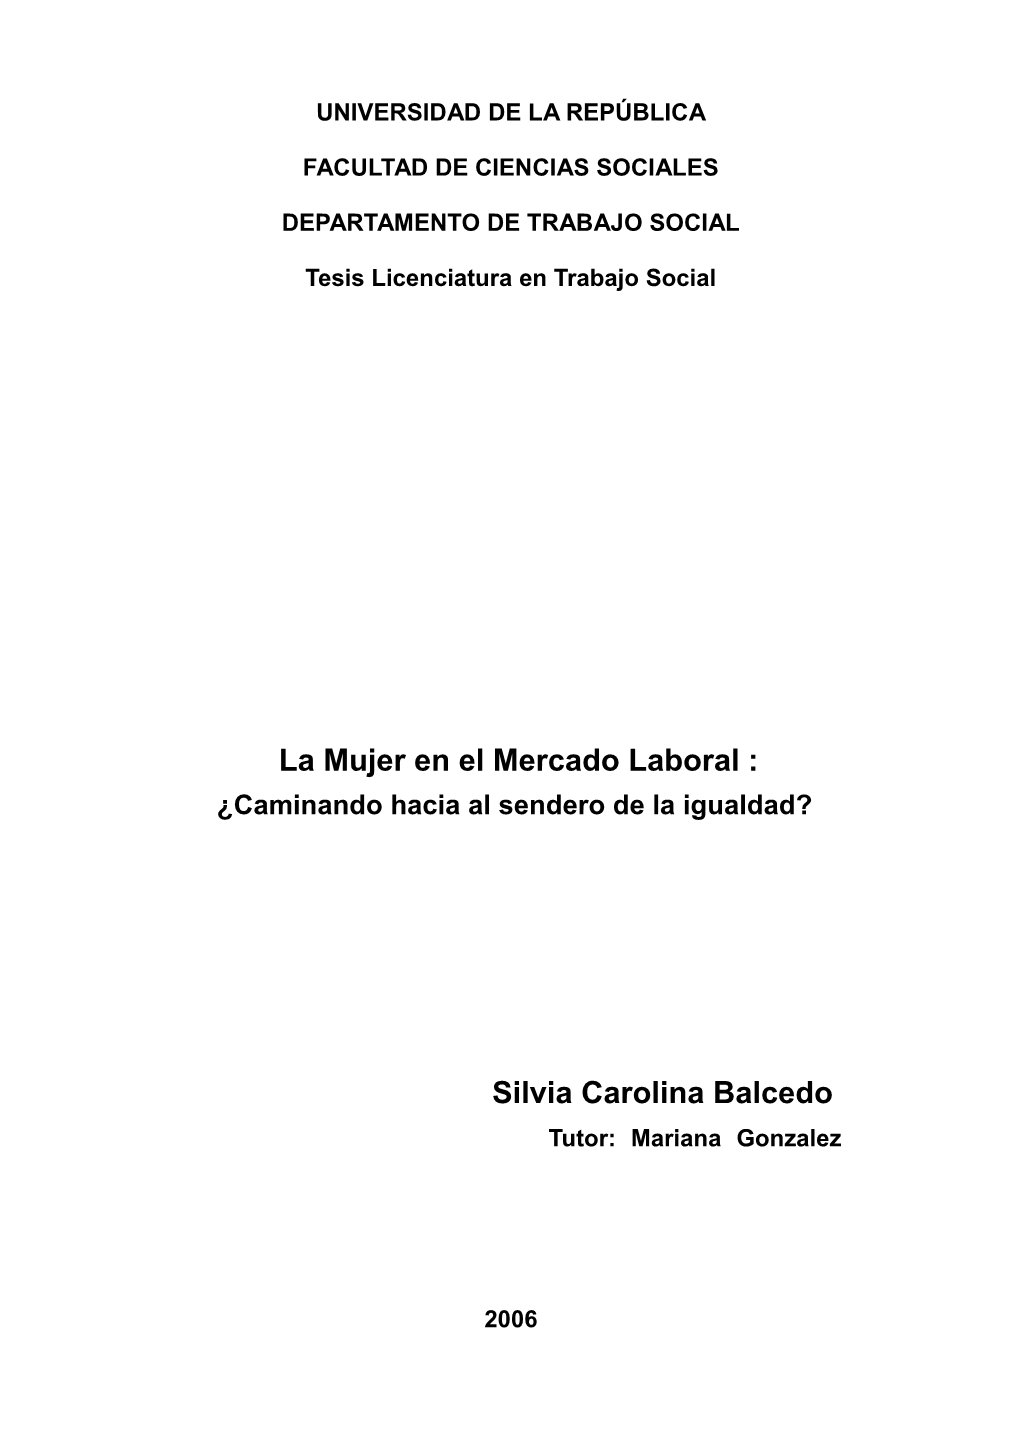 La Mujer En El Mercado Laboral : Silvia Carolina Balcedo